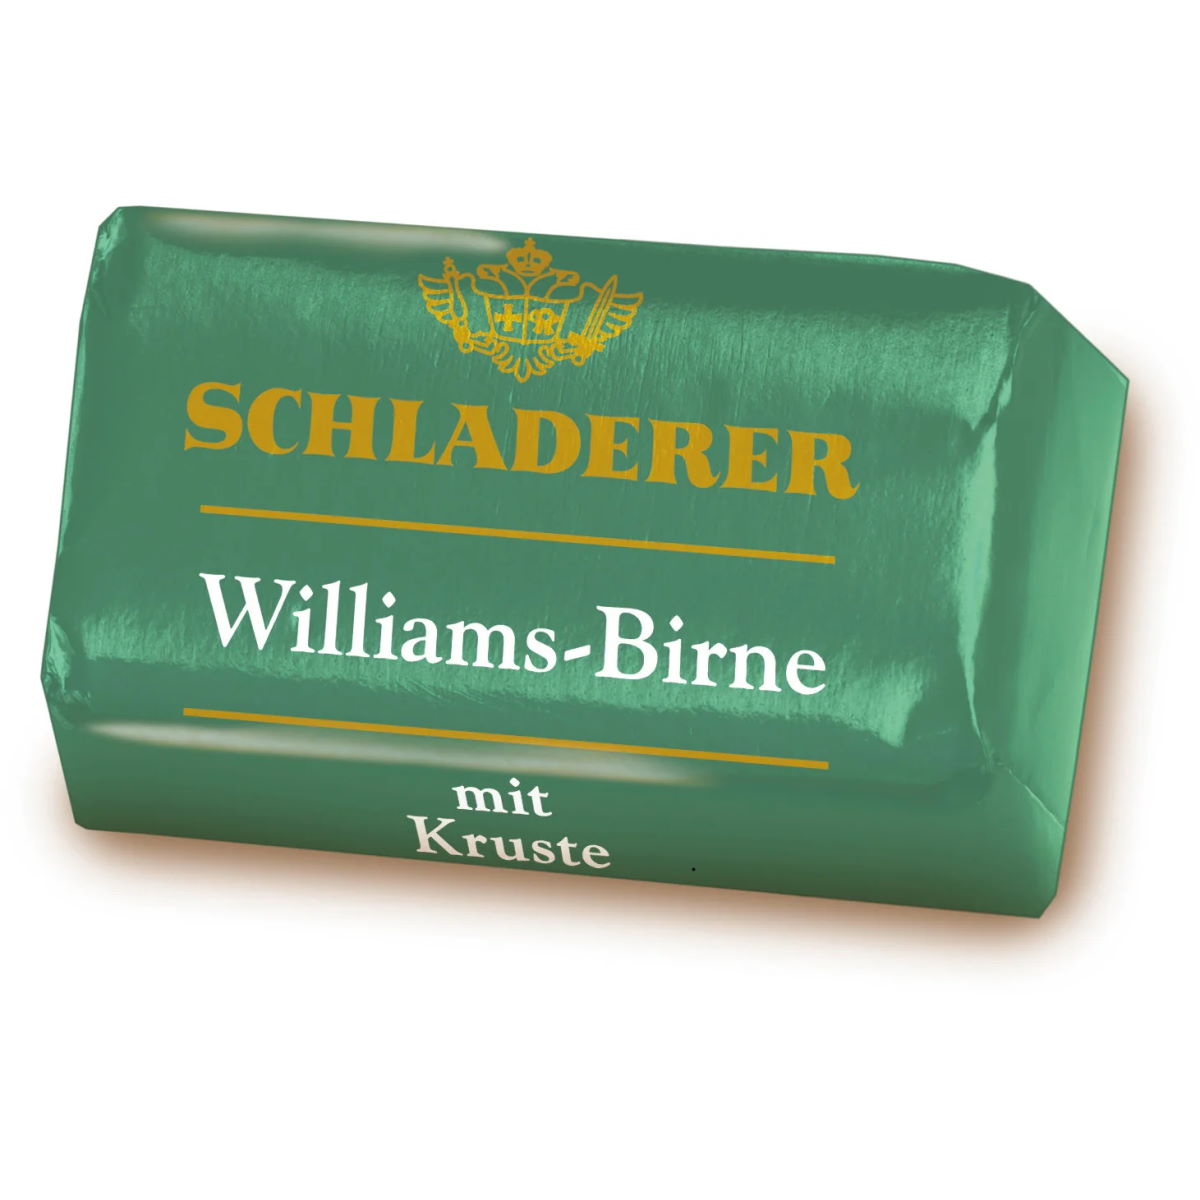 Schladerer Williams Birne